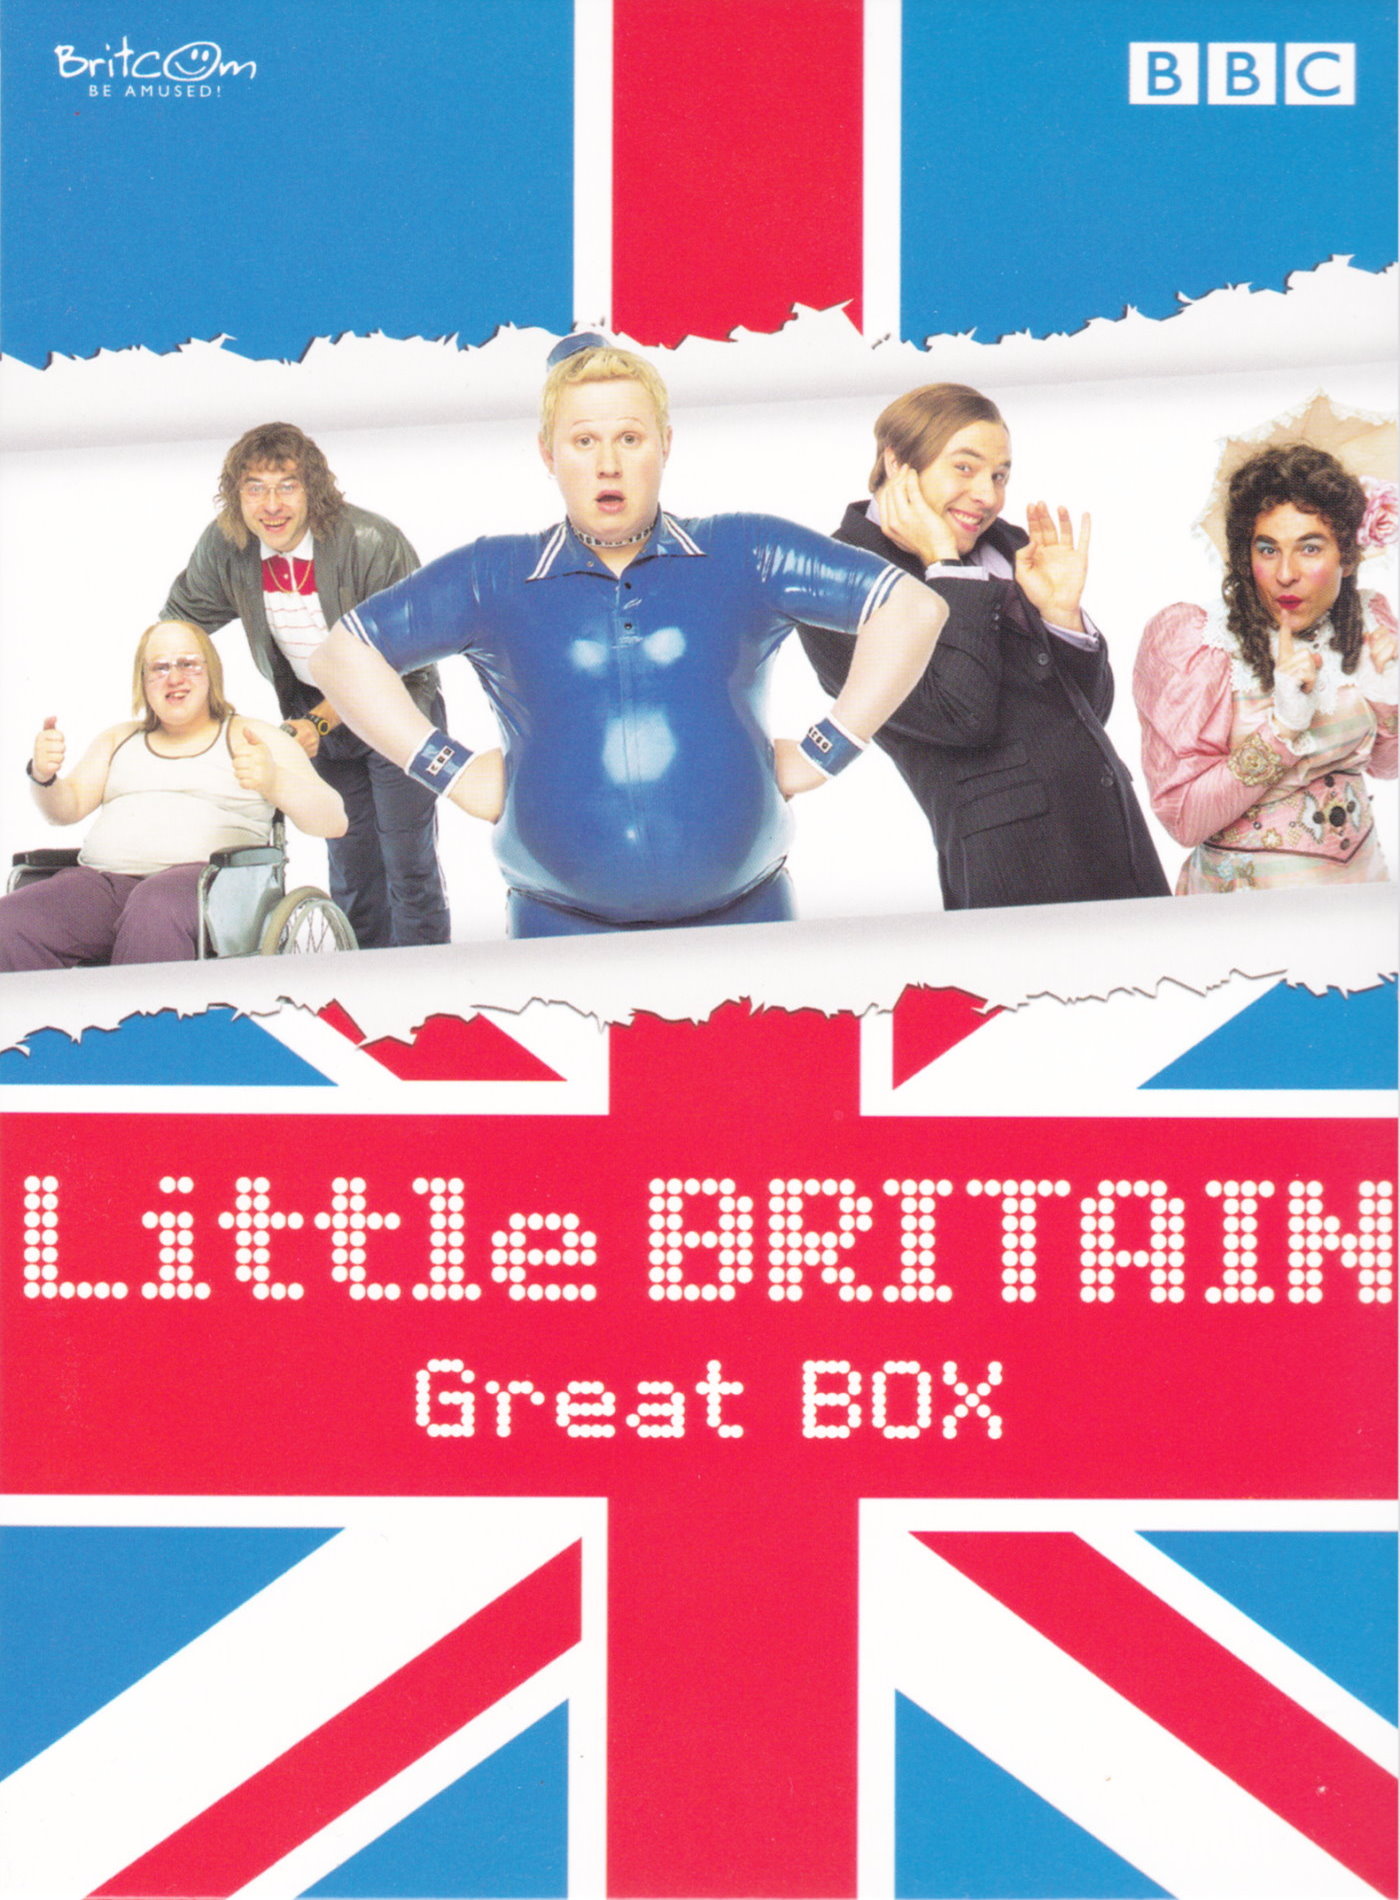 Cover - Little Britain.jpg